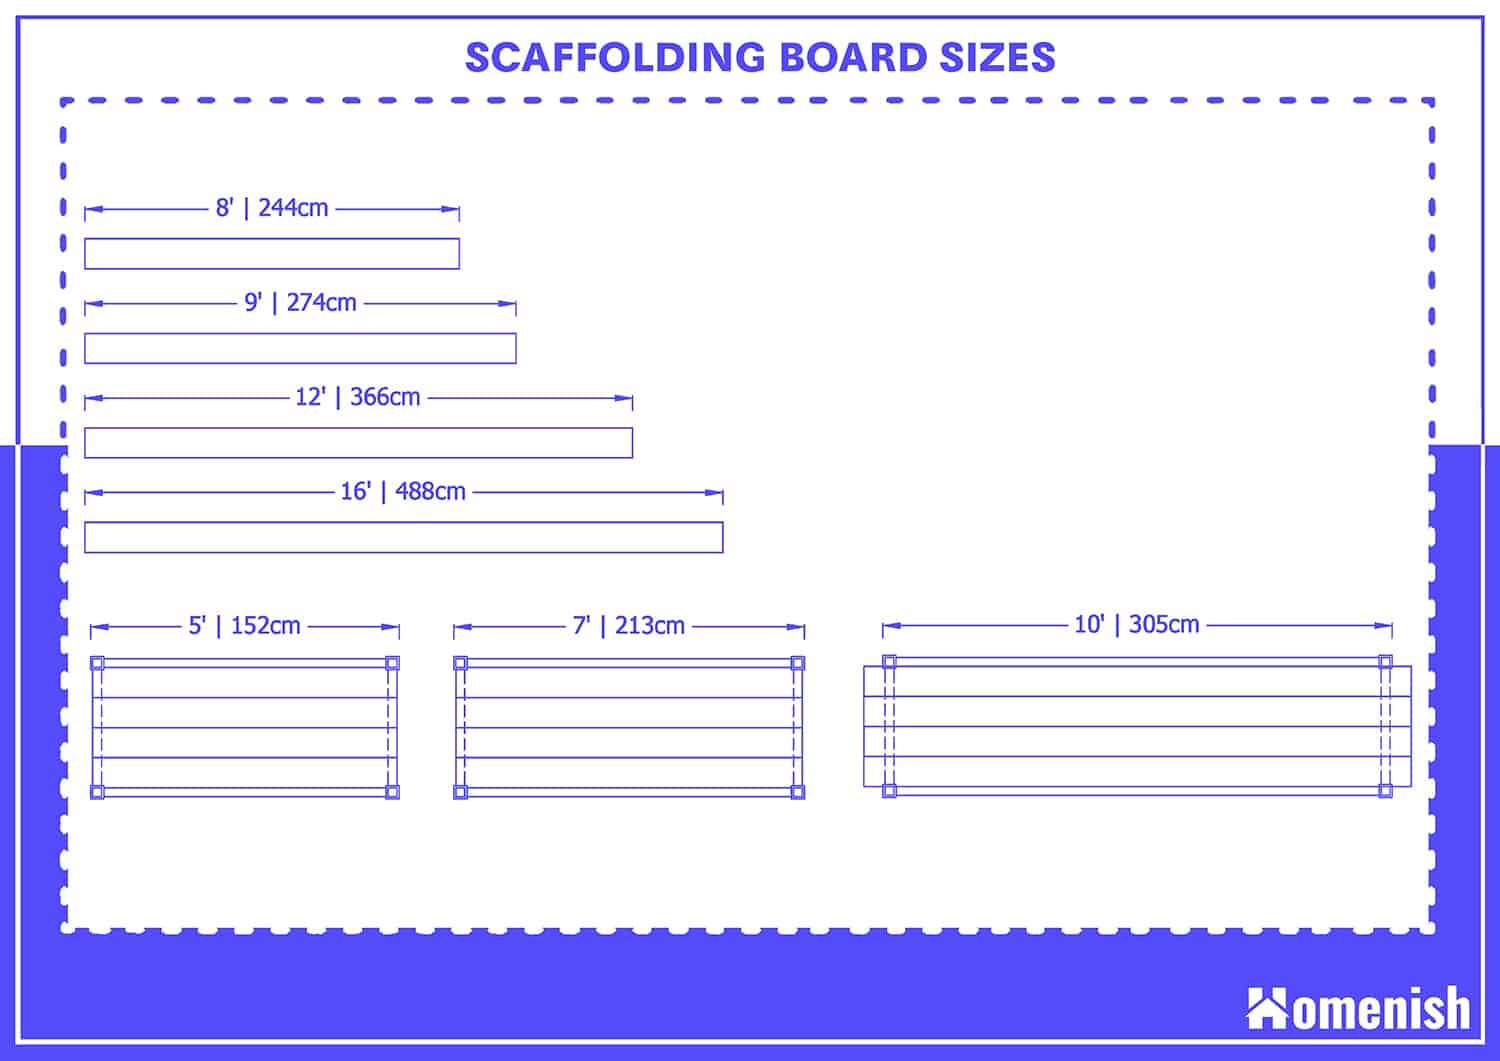 Scaffolding Board Sizes